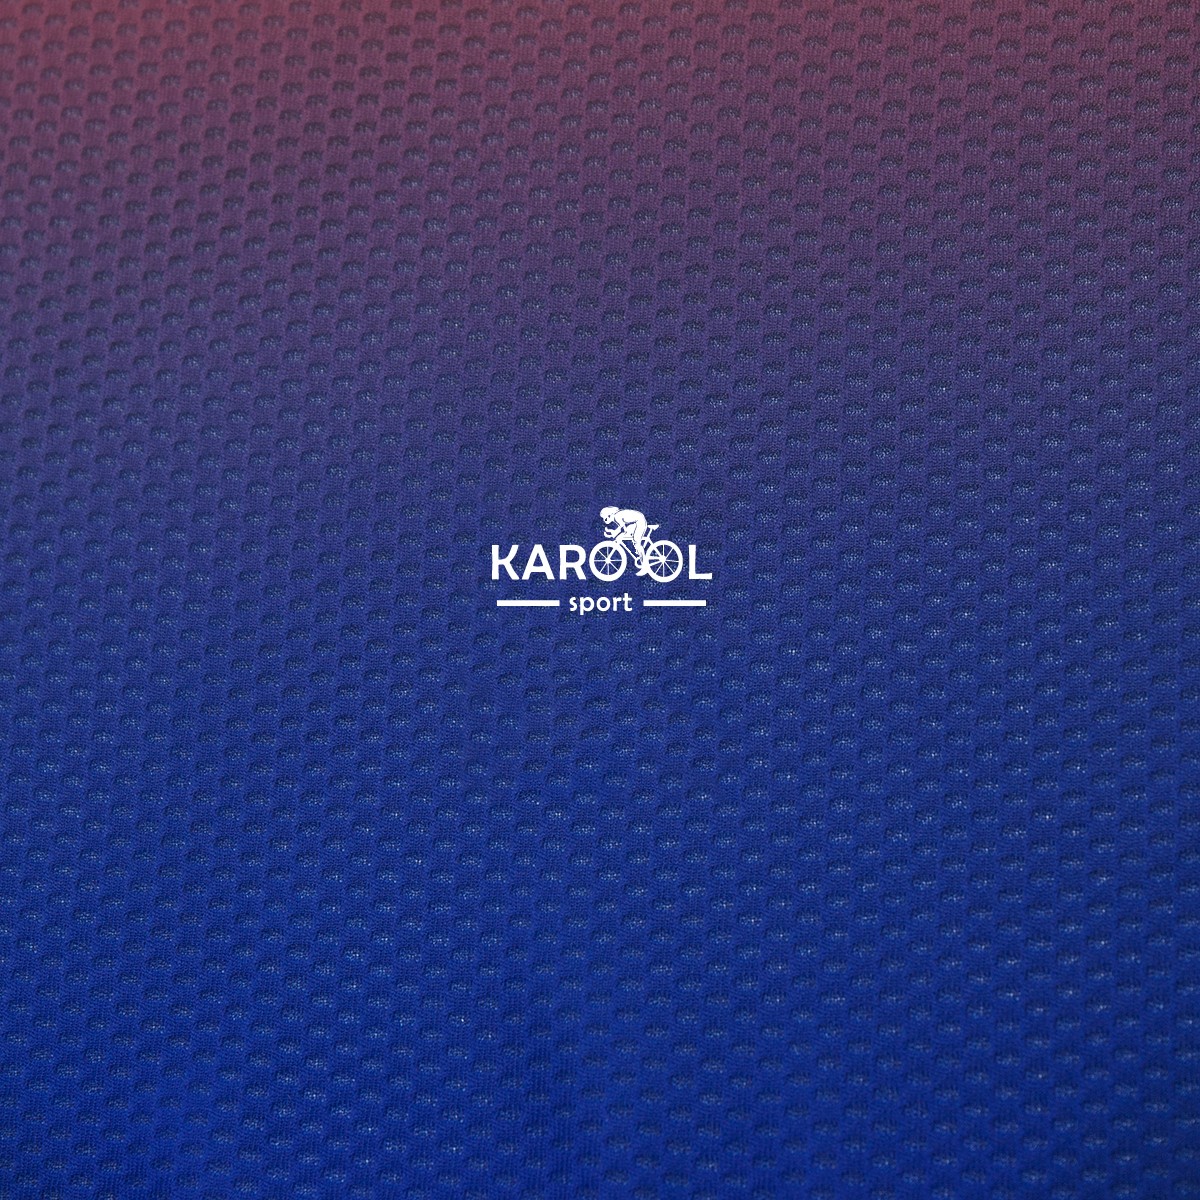 Karool elite running t shirt supplier for sporting-7